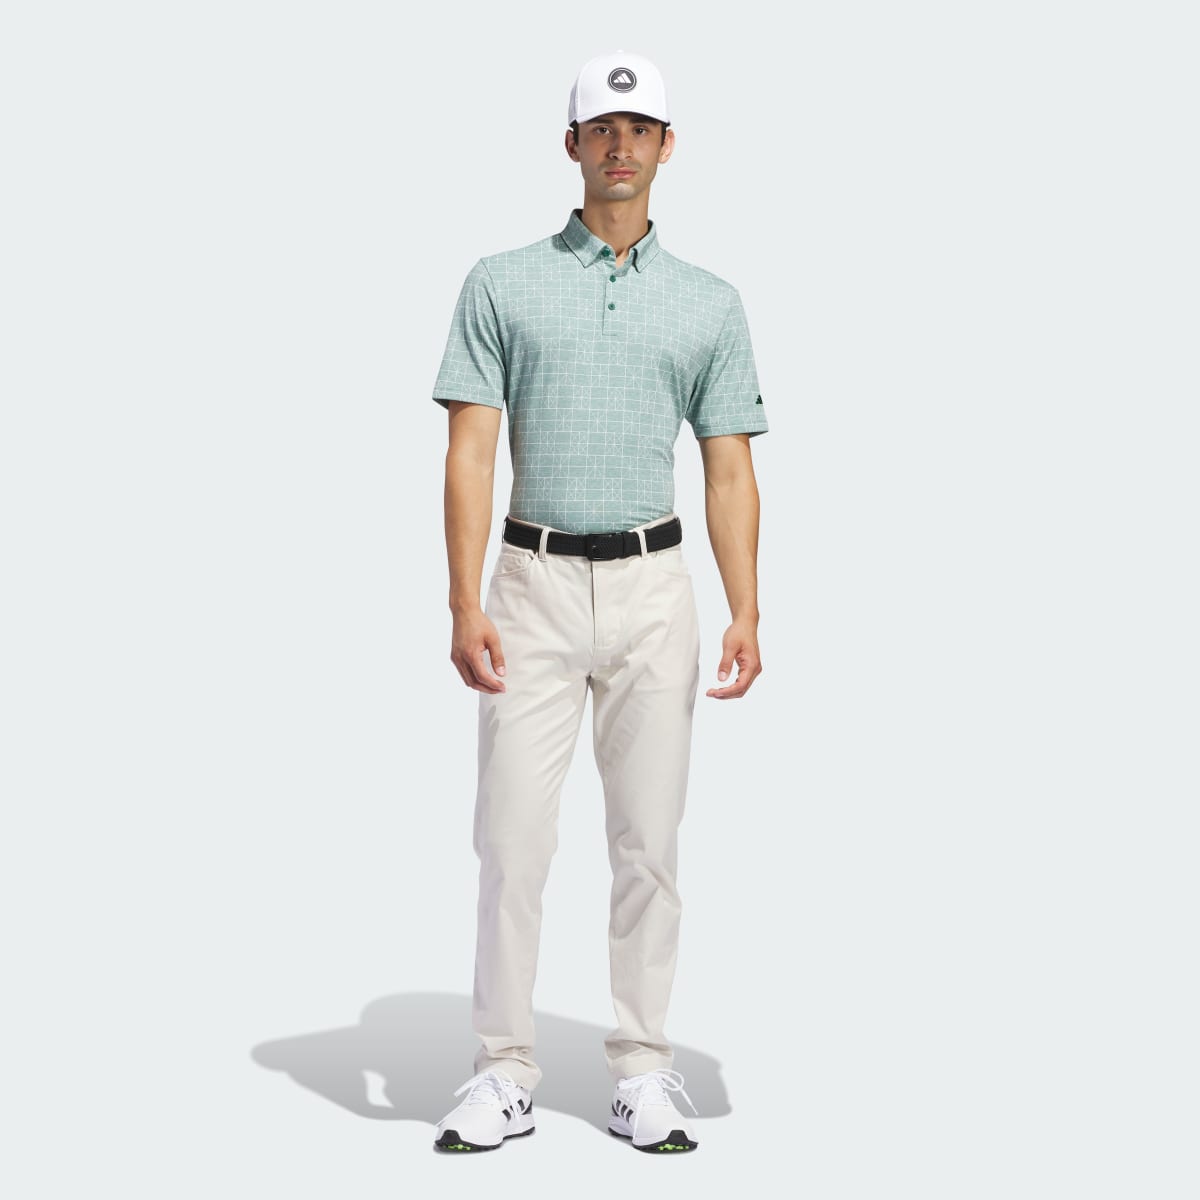 Adidas Go-To 5-Pocket Golf Hose. 5